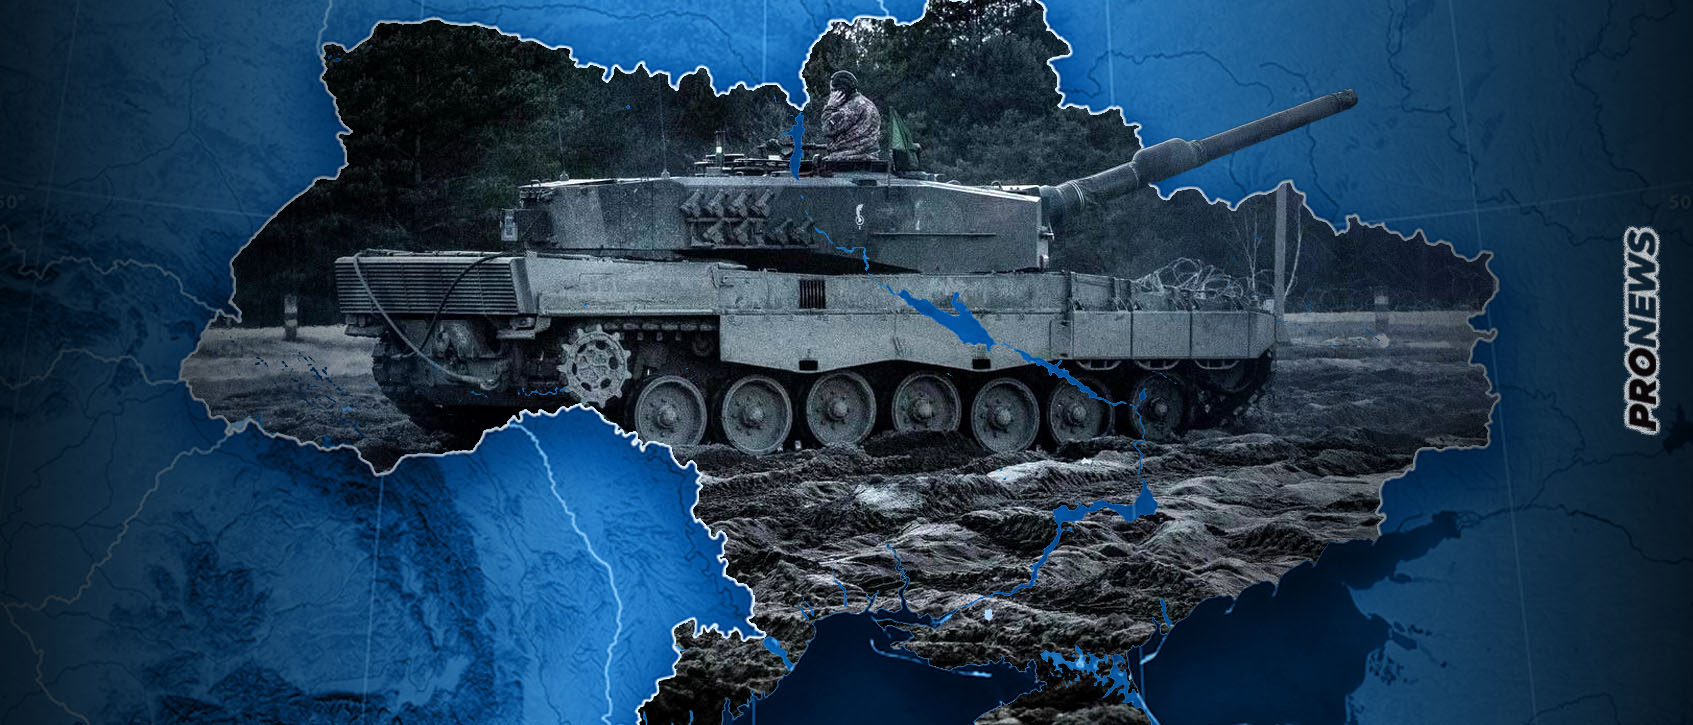 Άρχισε η μεταφορά των ισπανικών Leopard 2 στην Ουκρανία –  Μεγάλα  φορτία όπλων καταφθάνουν στο  Κίεβο